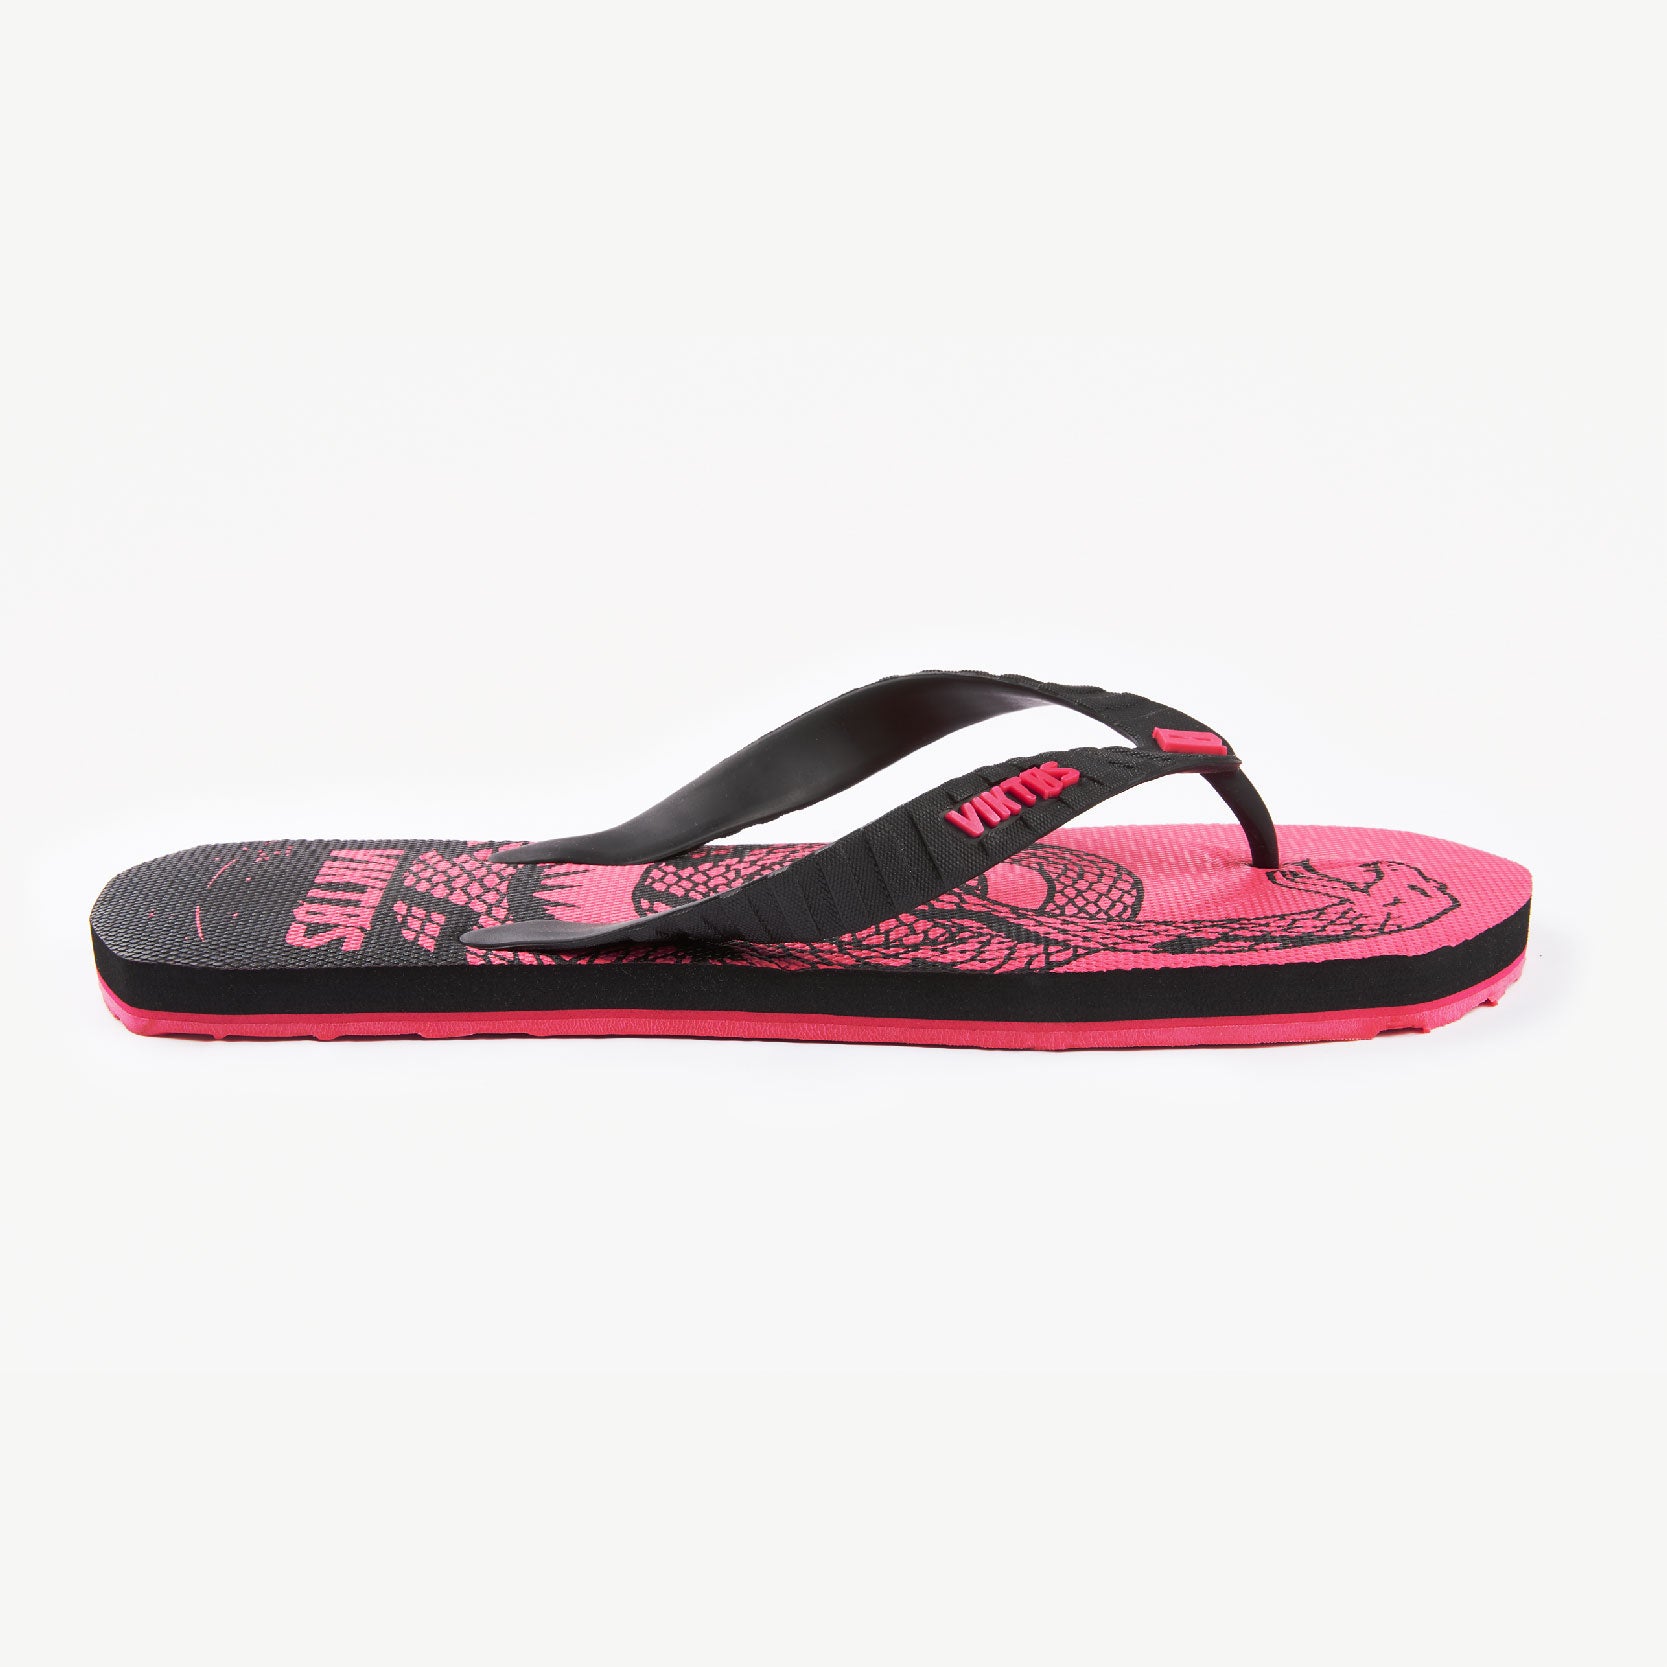 VIKTOS Women's Chuville Treadnaught Sandal [Pink]